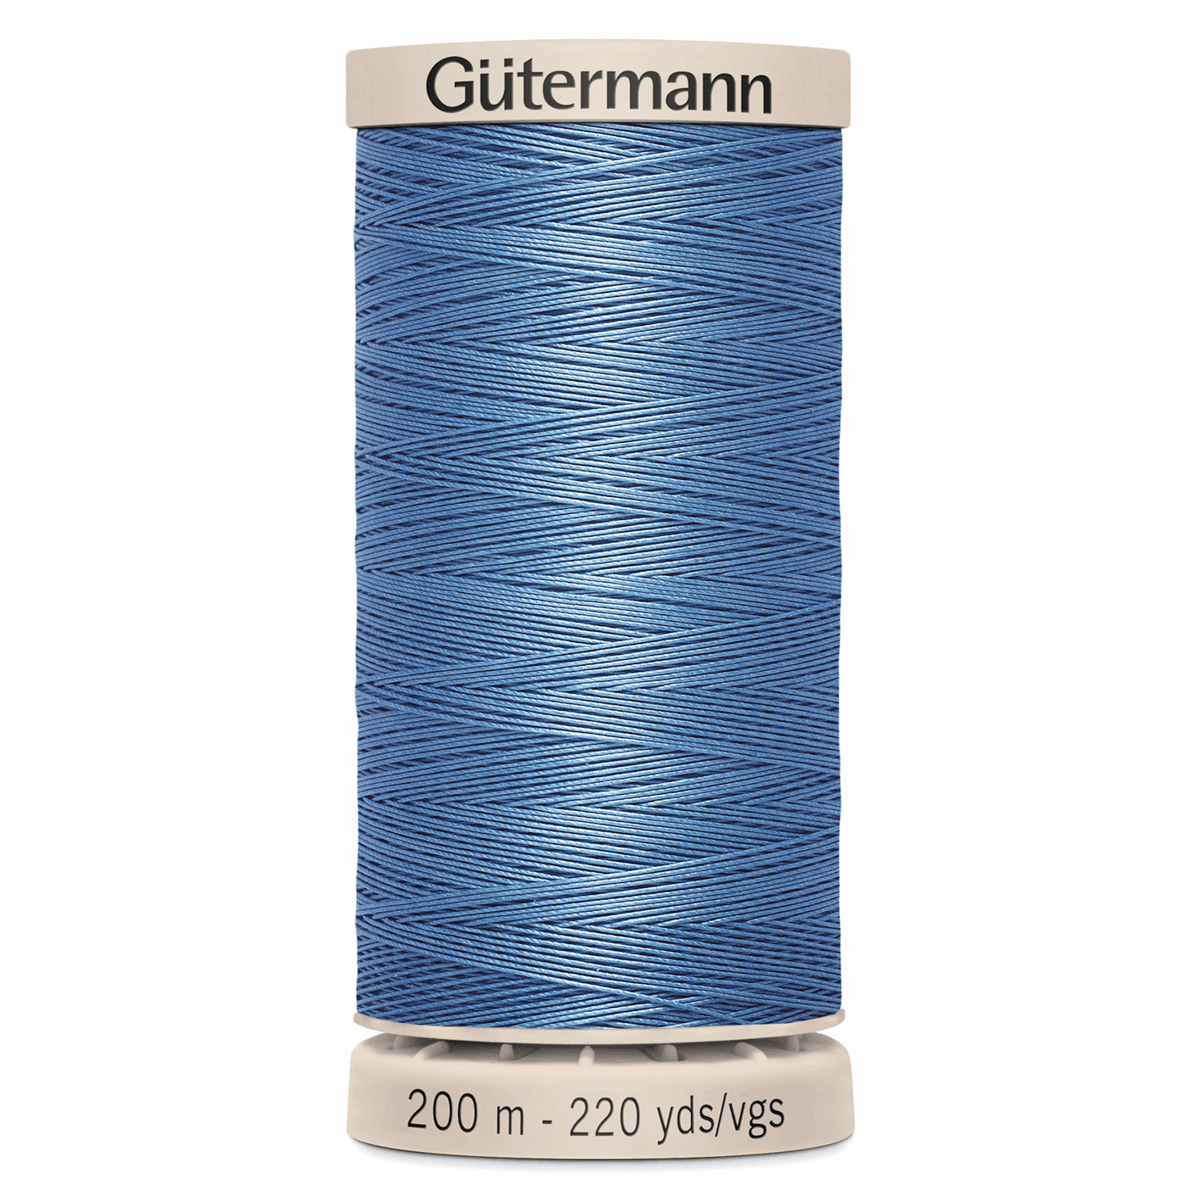 Gutermann Quilting Thread 200m - Colour 5725